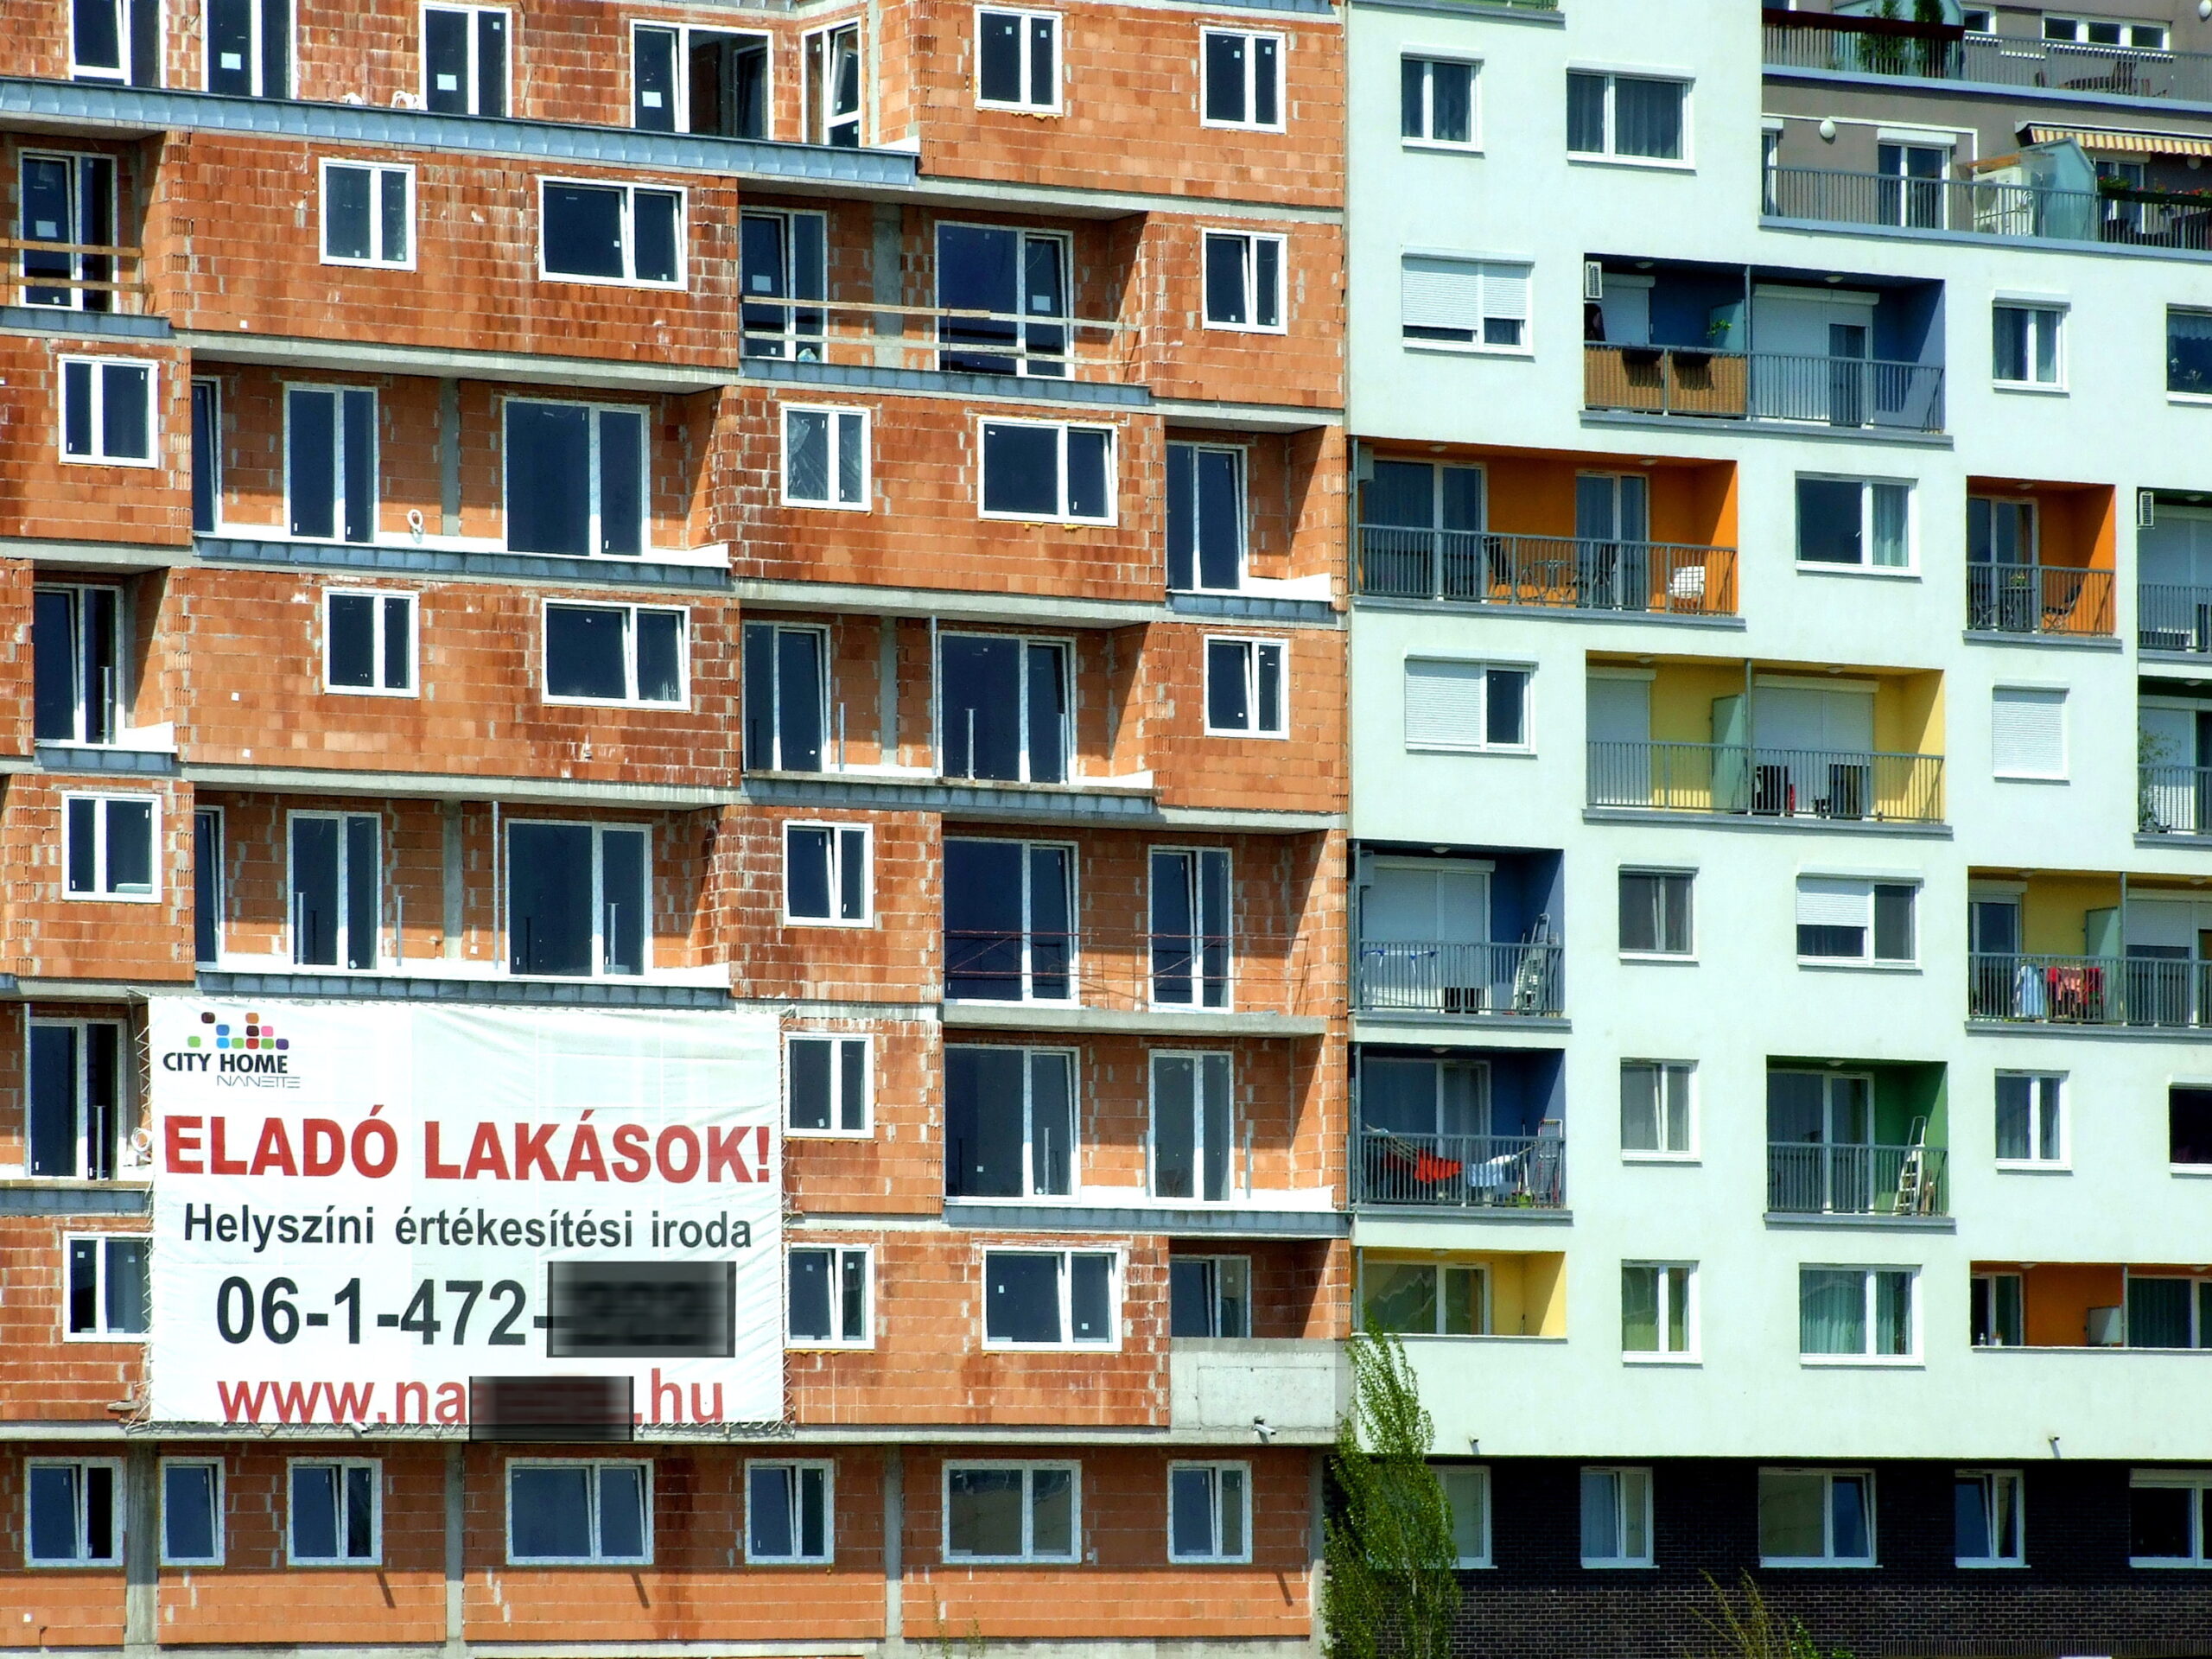 Rekordpreise pro Quadratmeter für neue Wohnungen in Budapest